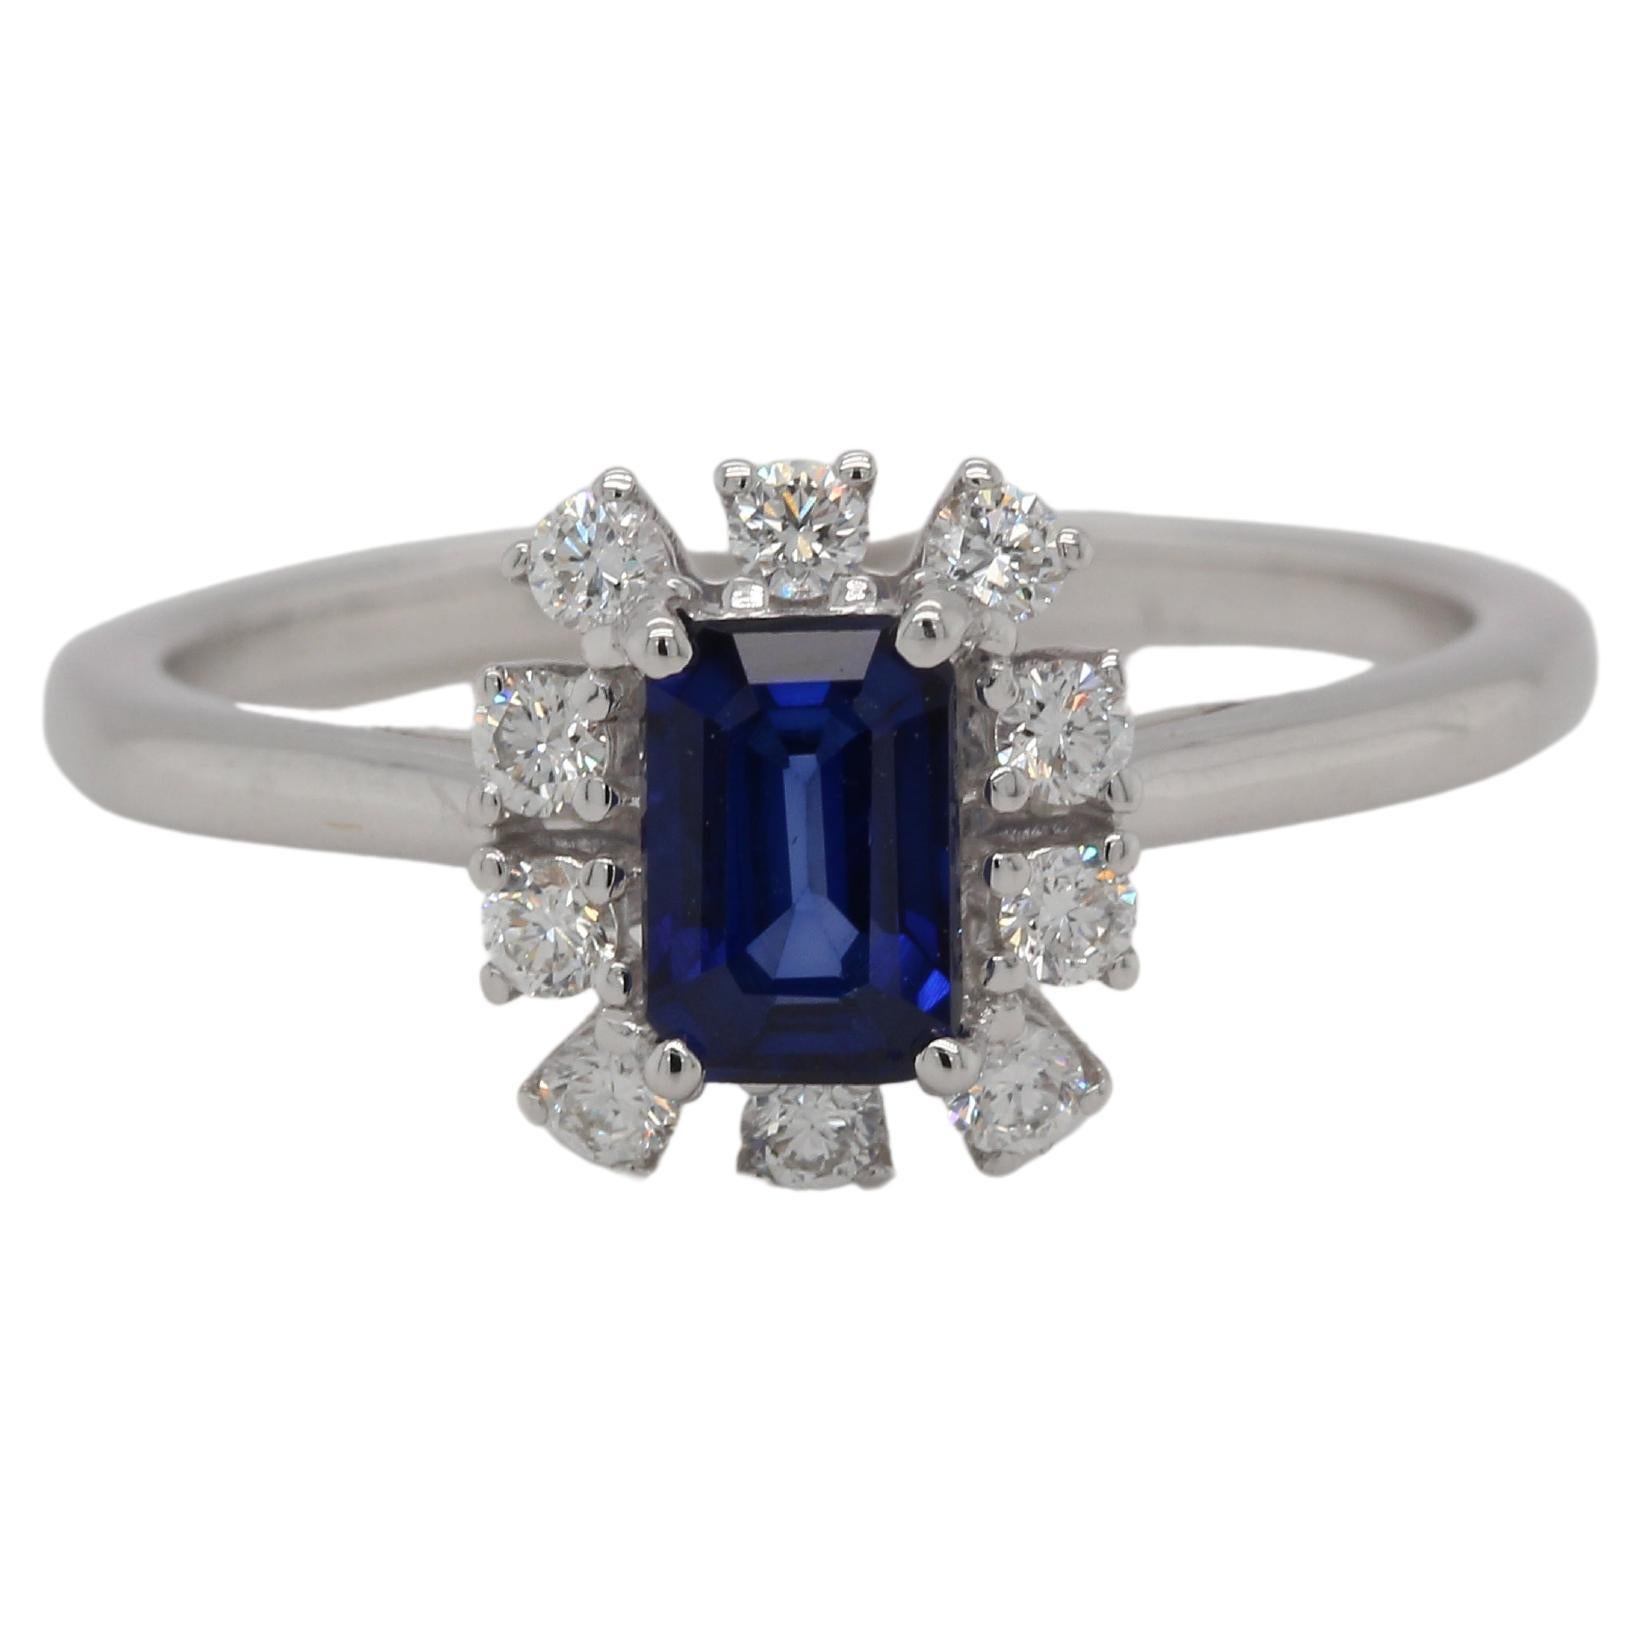 Dieser Ring ist ideal für alle, die mit ihrem Schmuck ein Zeichen setzen wollen. Die Farbe des brillanten diffusionsblauen Saphirsteins sowie die ihn umgebenden Diamantsteine heben ihn hervor. Die antike Fassung dieses Rings ist atemberaubend, vor